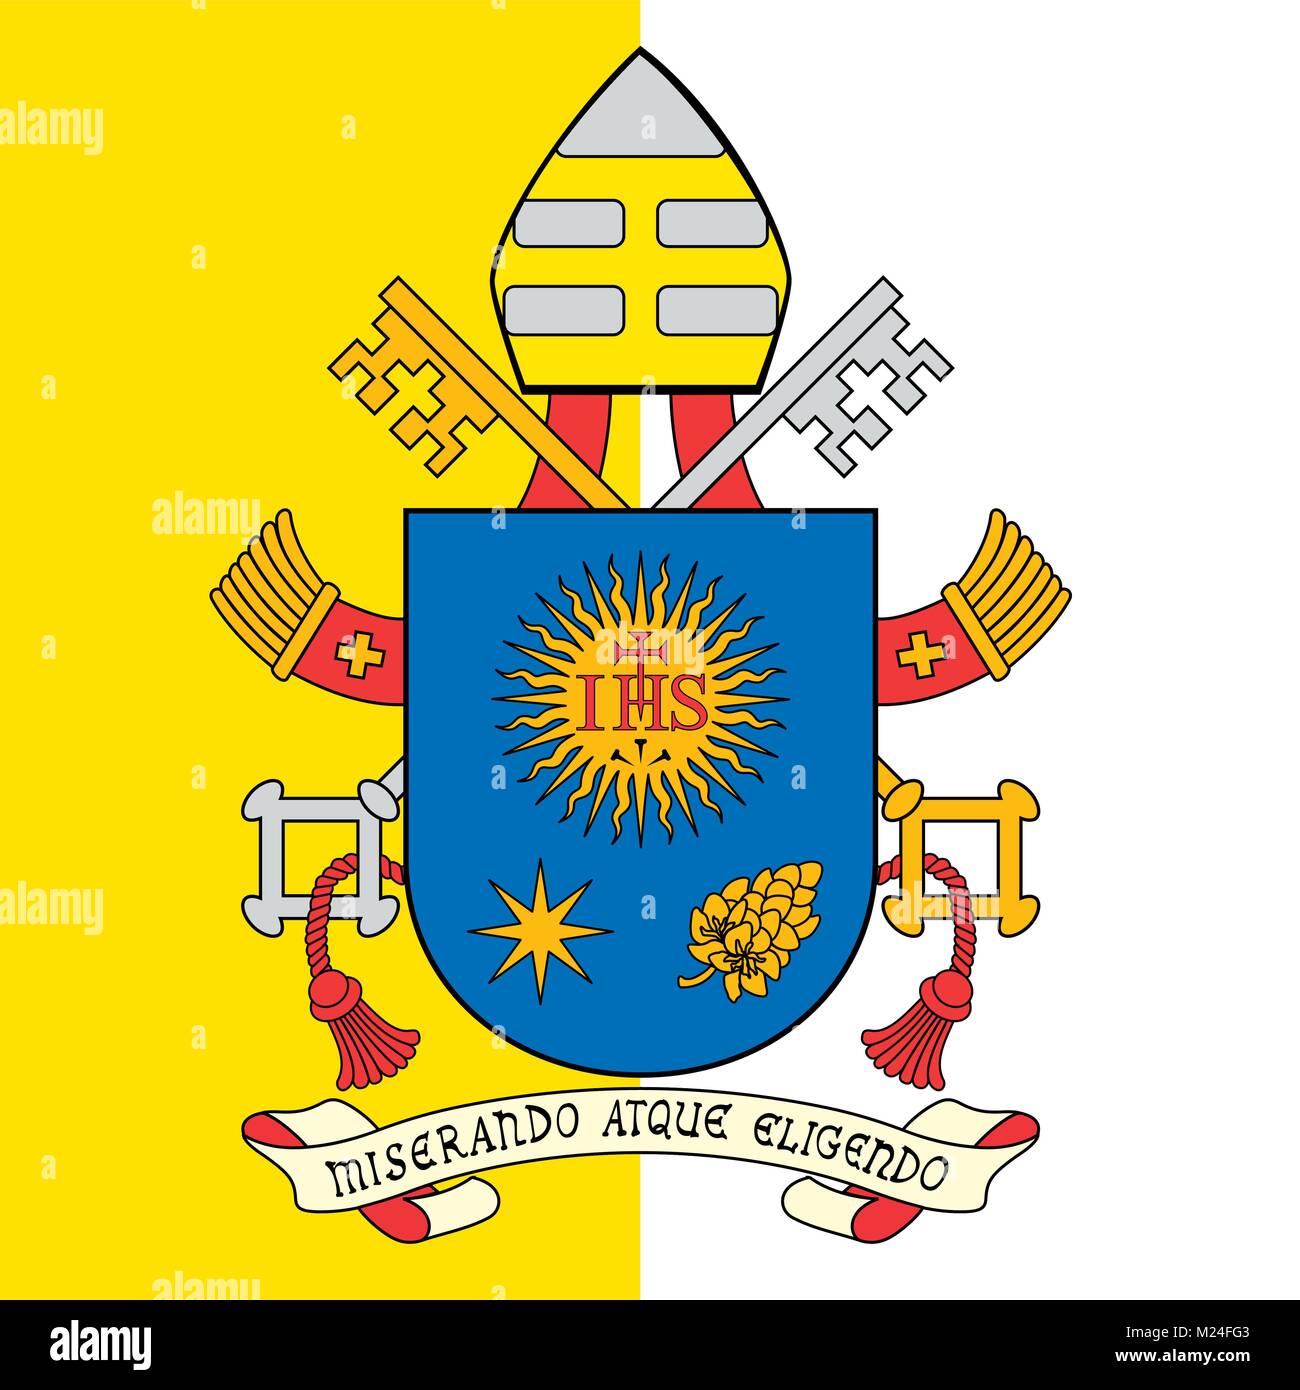 Le pape François, Saint-Siège armoiries et drapeau de la Cité du Vatican Illustration de Vecteur